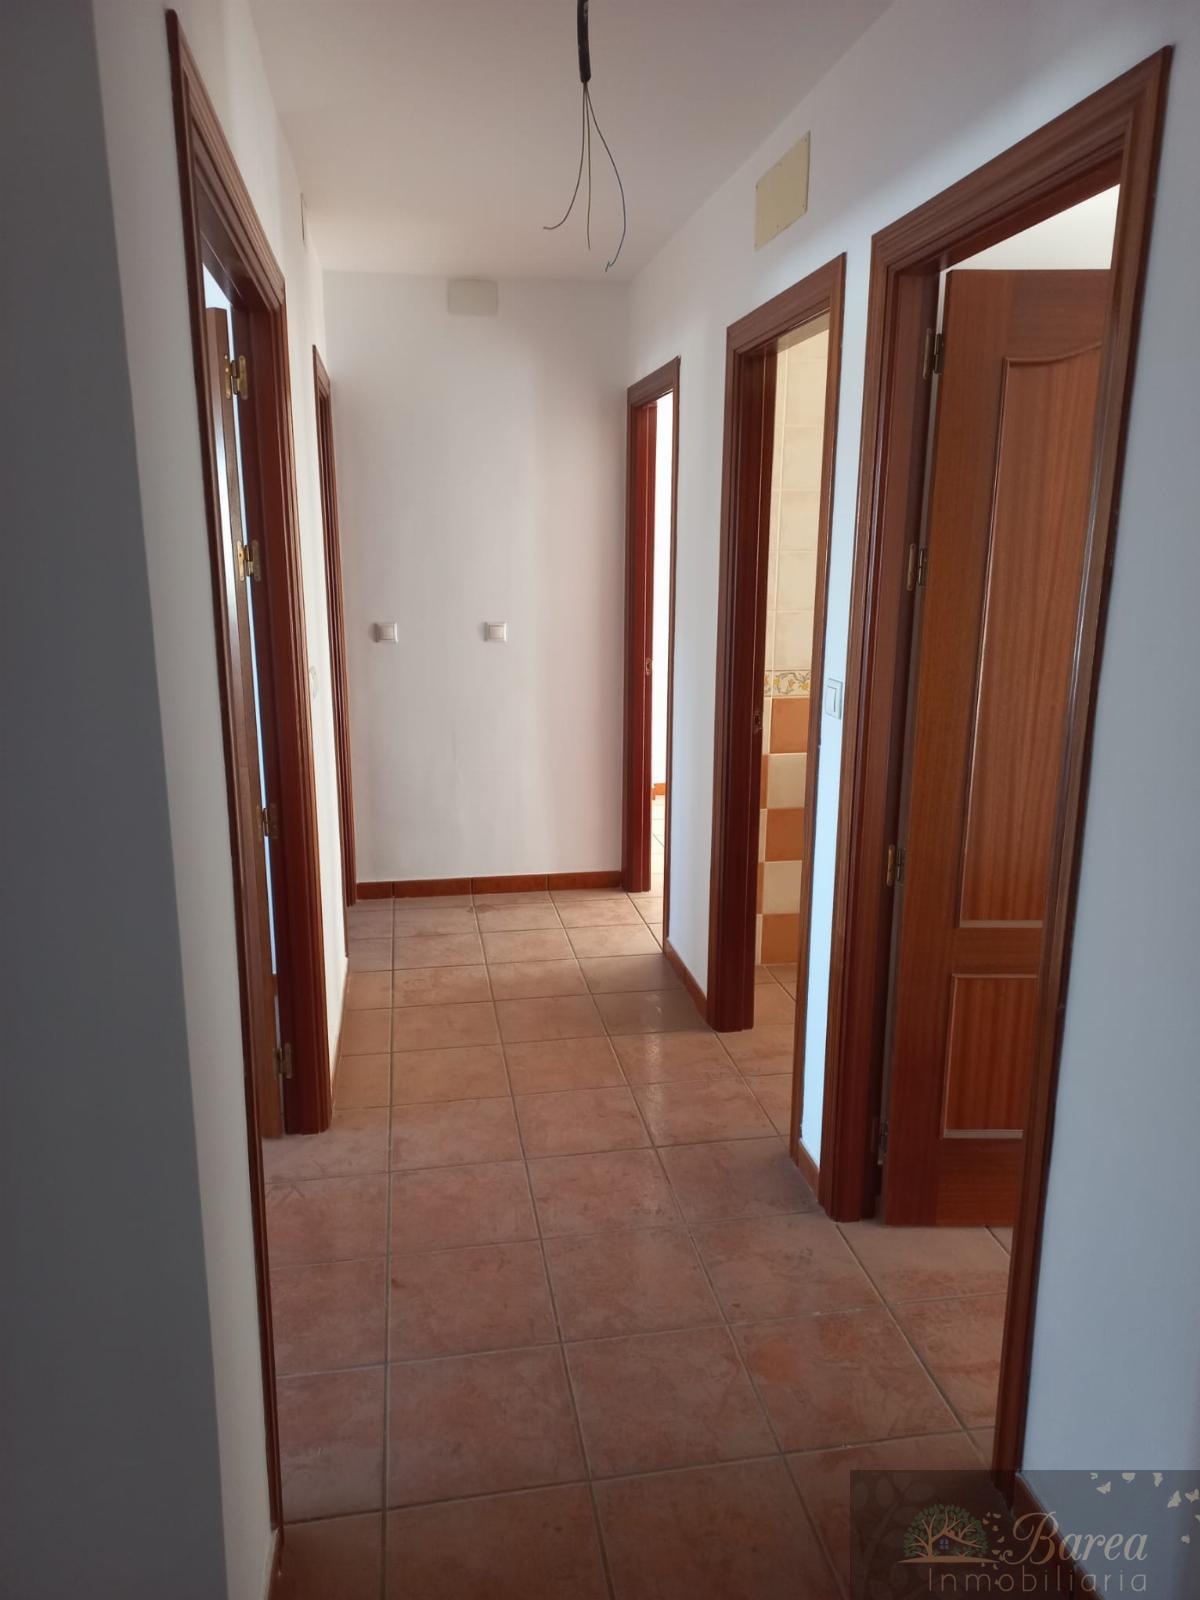 For sale of flat in Priego de Córdoba